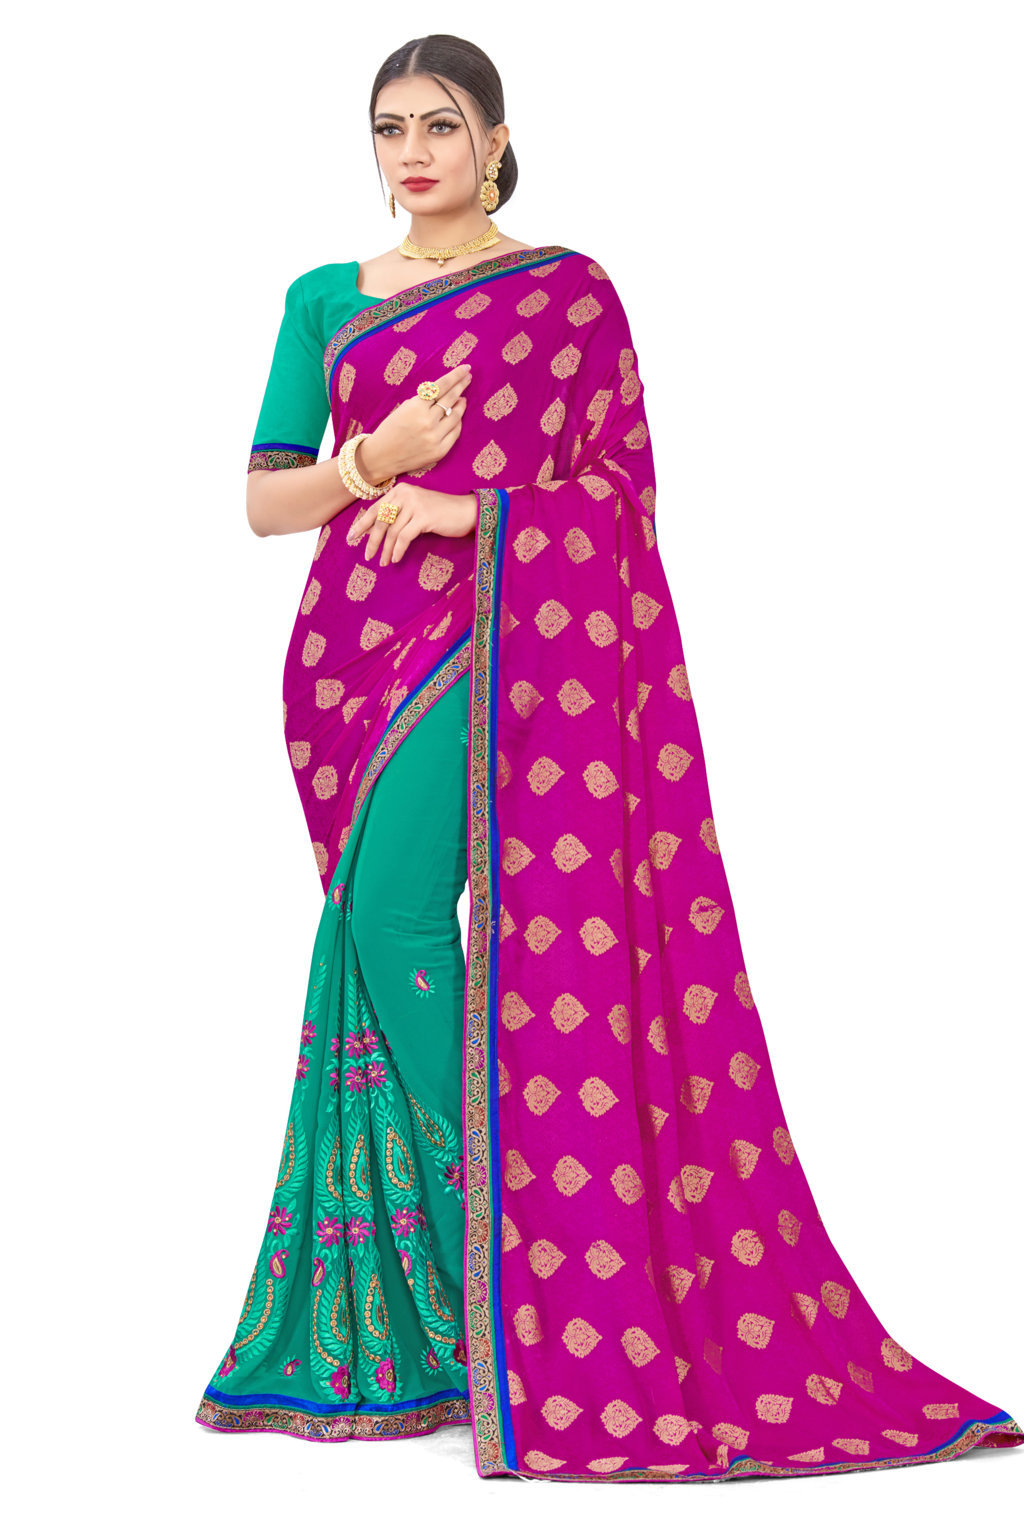 weightless georgette Sarees Under 500/pure Georgette saree online/Amazon  Saree haul@komalsarees#sari | Pure georgette sarees, Georgette sarees,  Sarees online